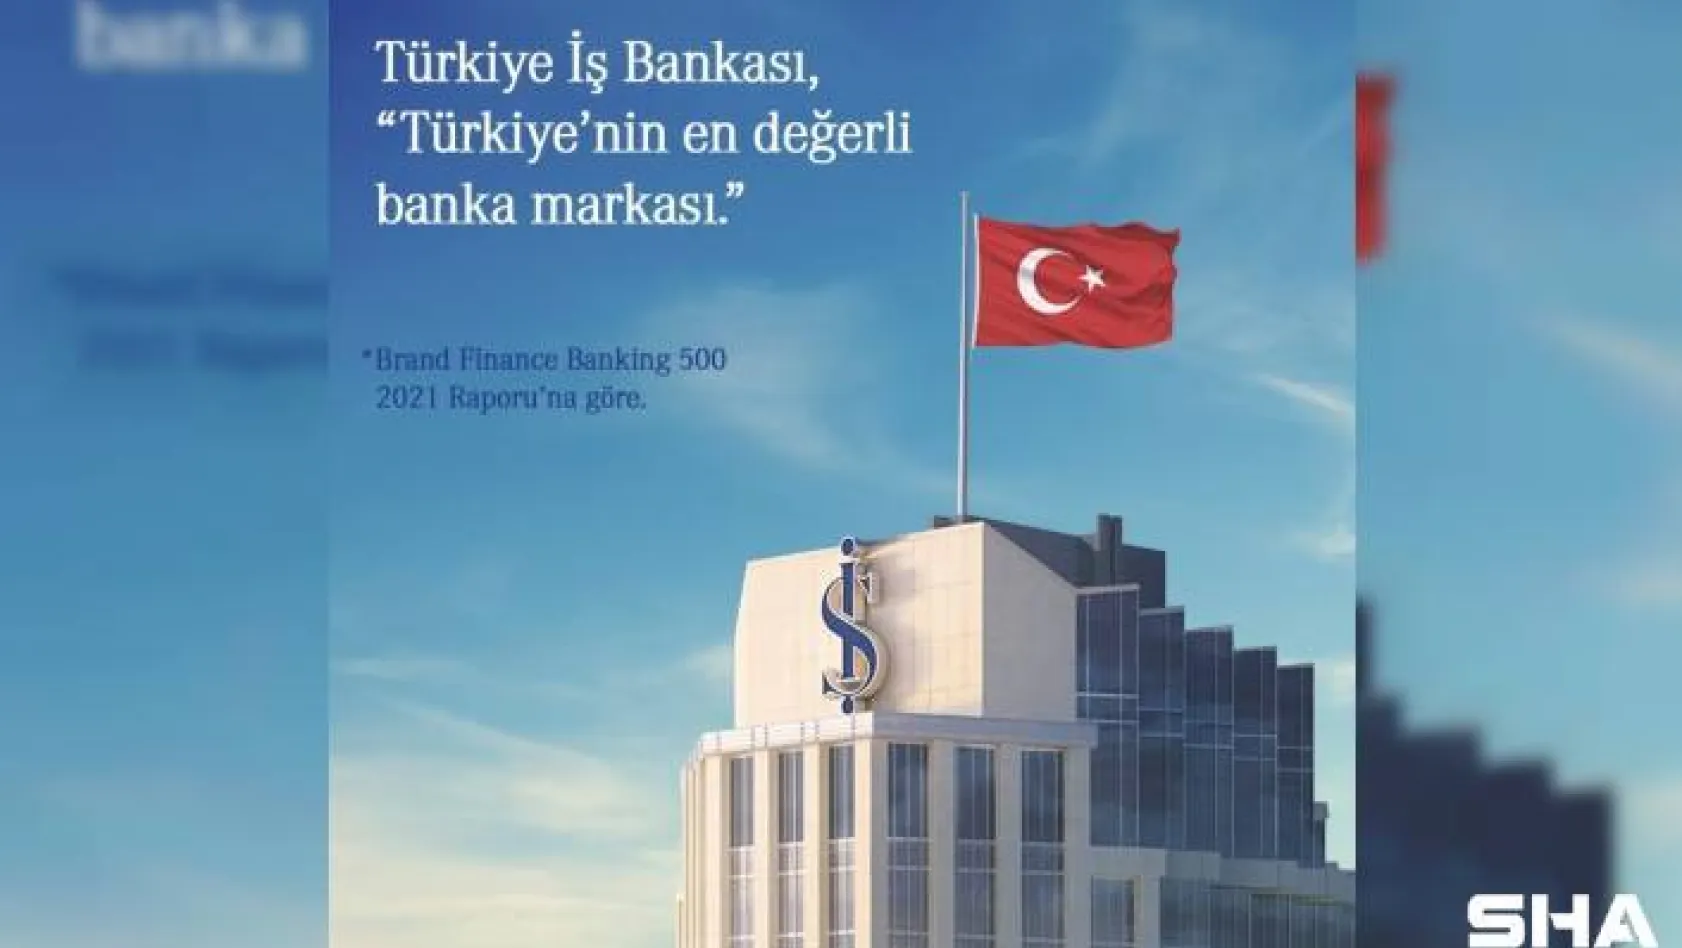 İş Bankası Türkiye'nin en değerli banka markası seçildi